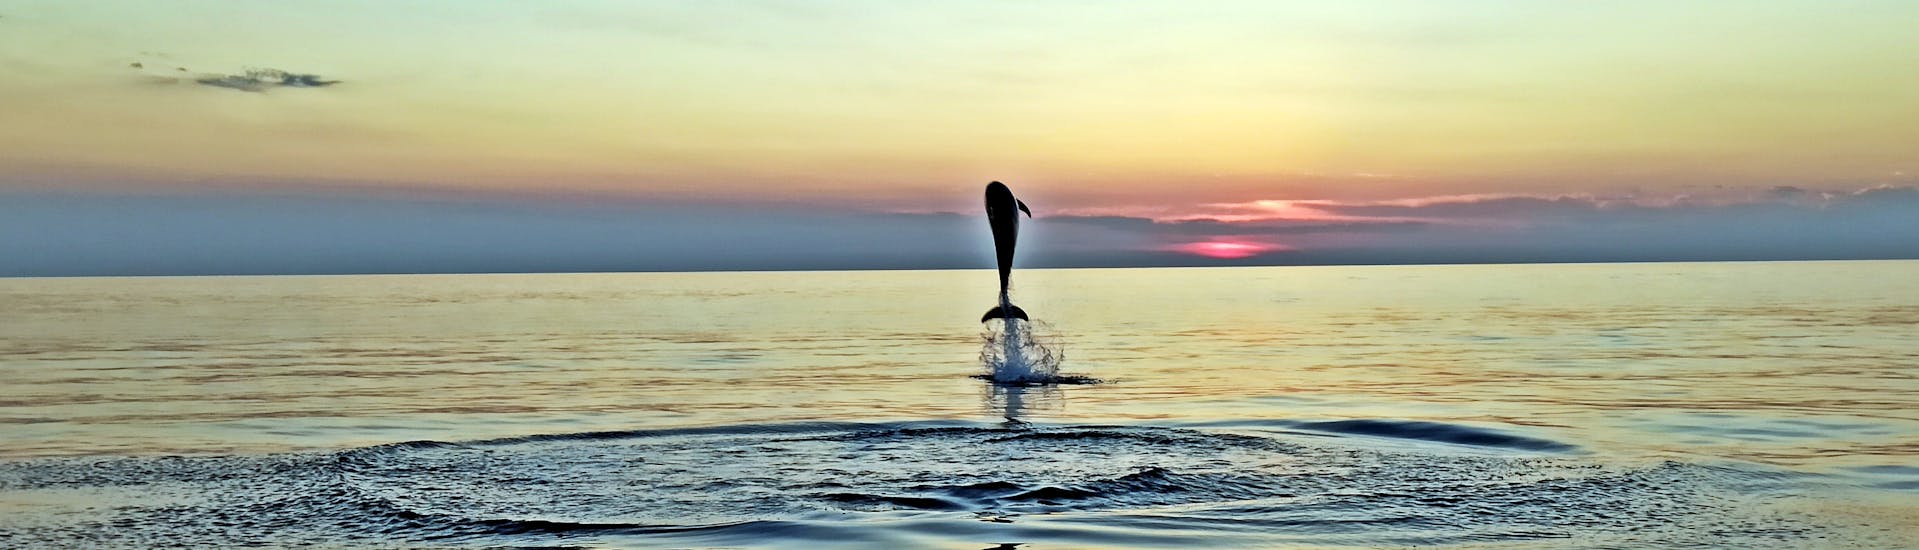 Giro in barca al tramonto da Rovigno con avvistamento delfini.